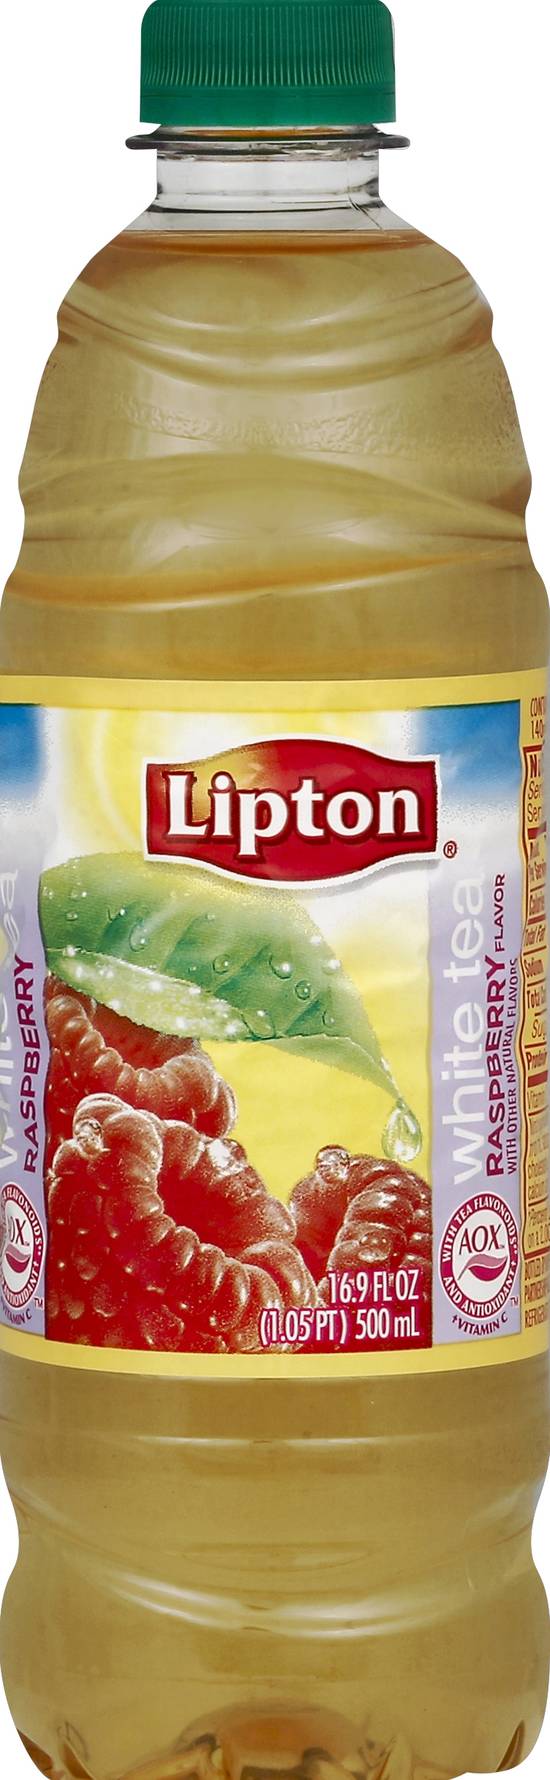 Lipton White Tea (16.9 fl oz) (raspberry)